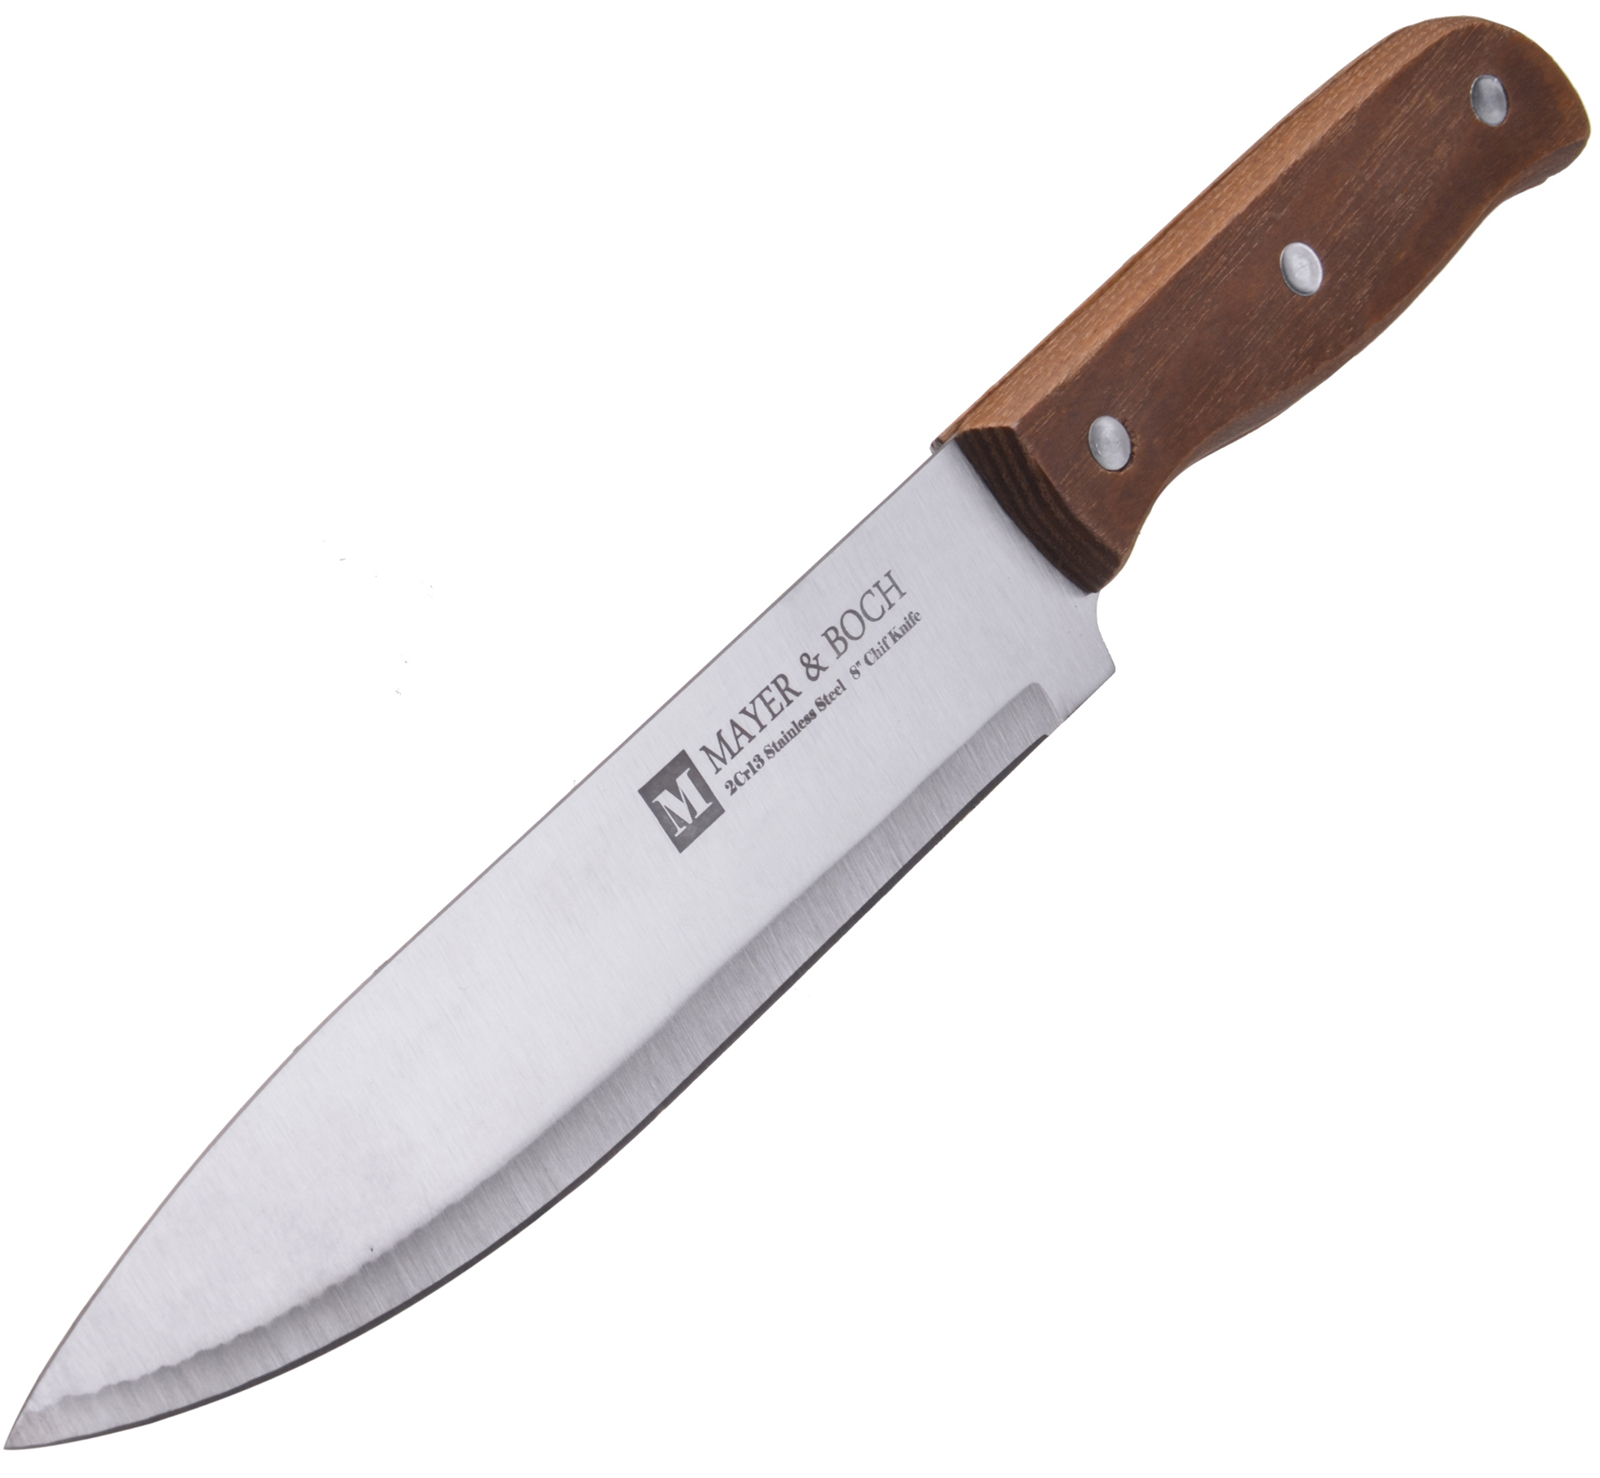 фото Нож поварской Mayer & Boch Classic, цвет: коричневый, серебристый, длина лезвия 19 см